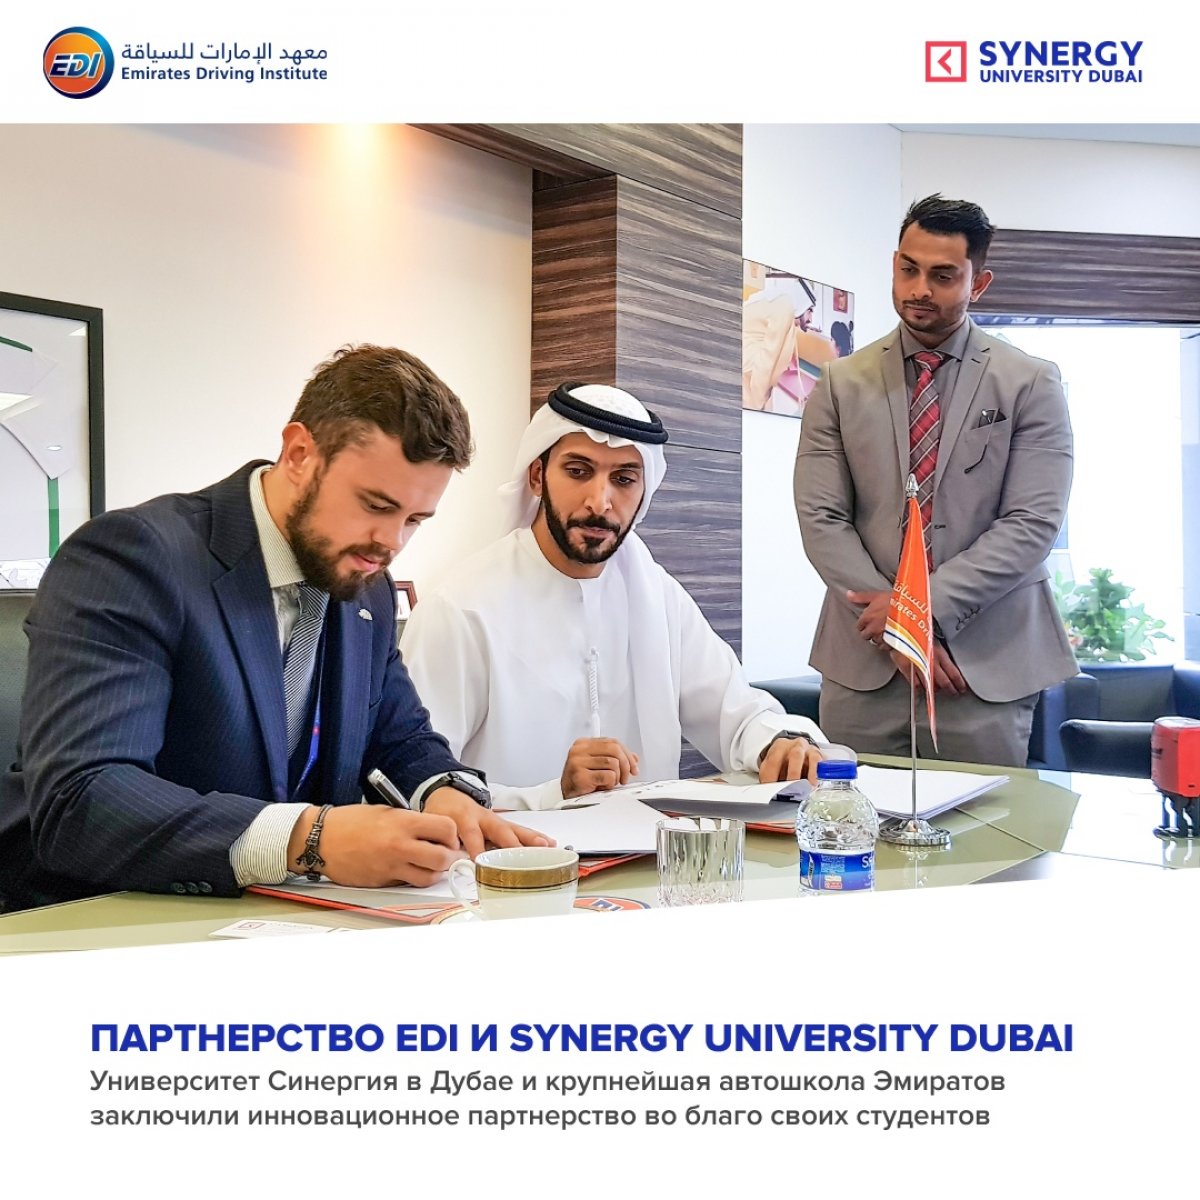 Университет Синергия Дубай заключил партнерство с EDI. Церемония подписания соглашения